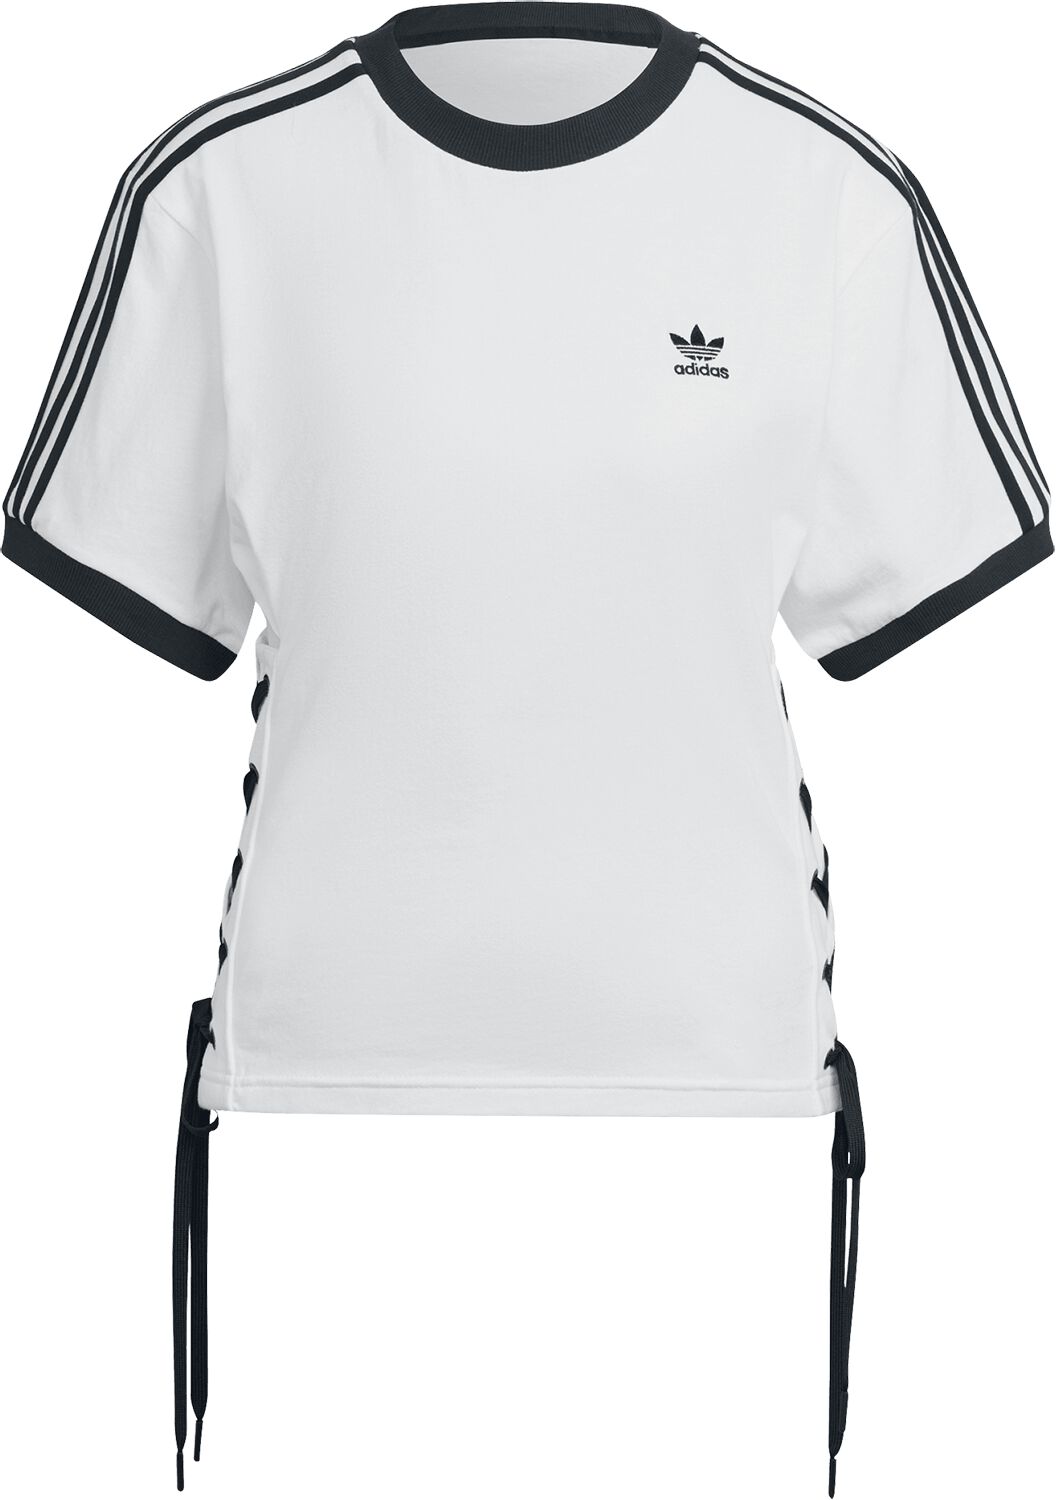 T-Shirt Manches courtes de Adidas - Laced Tee - XS à S - pour Femme - blanc